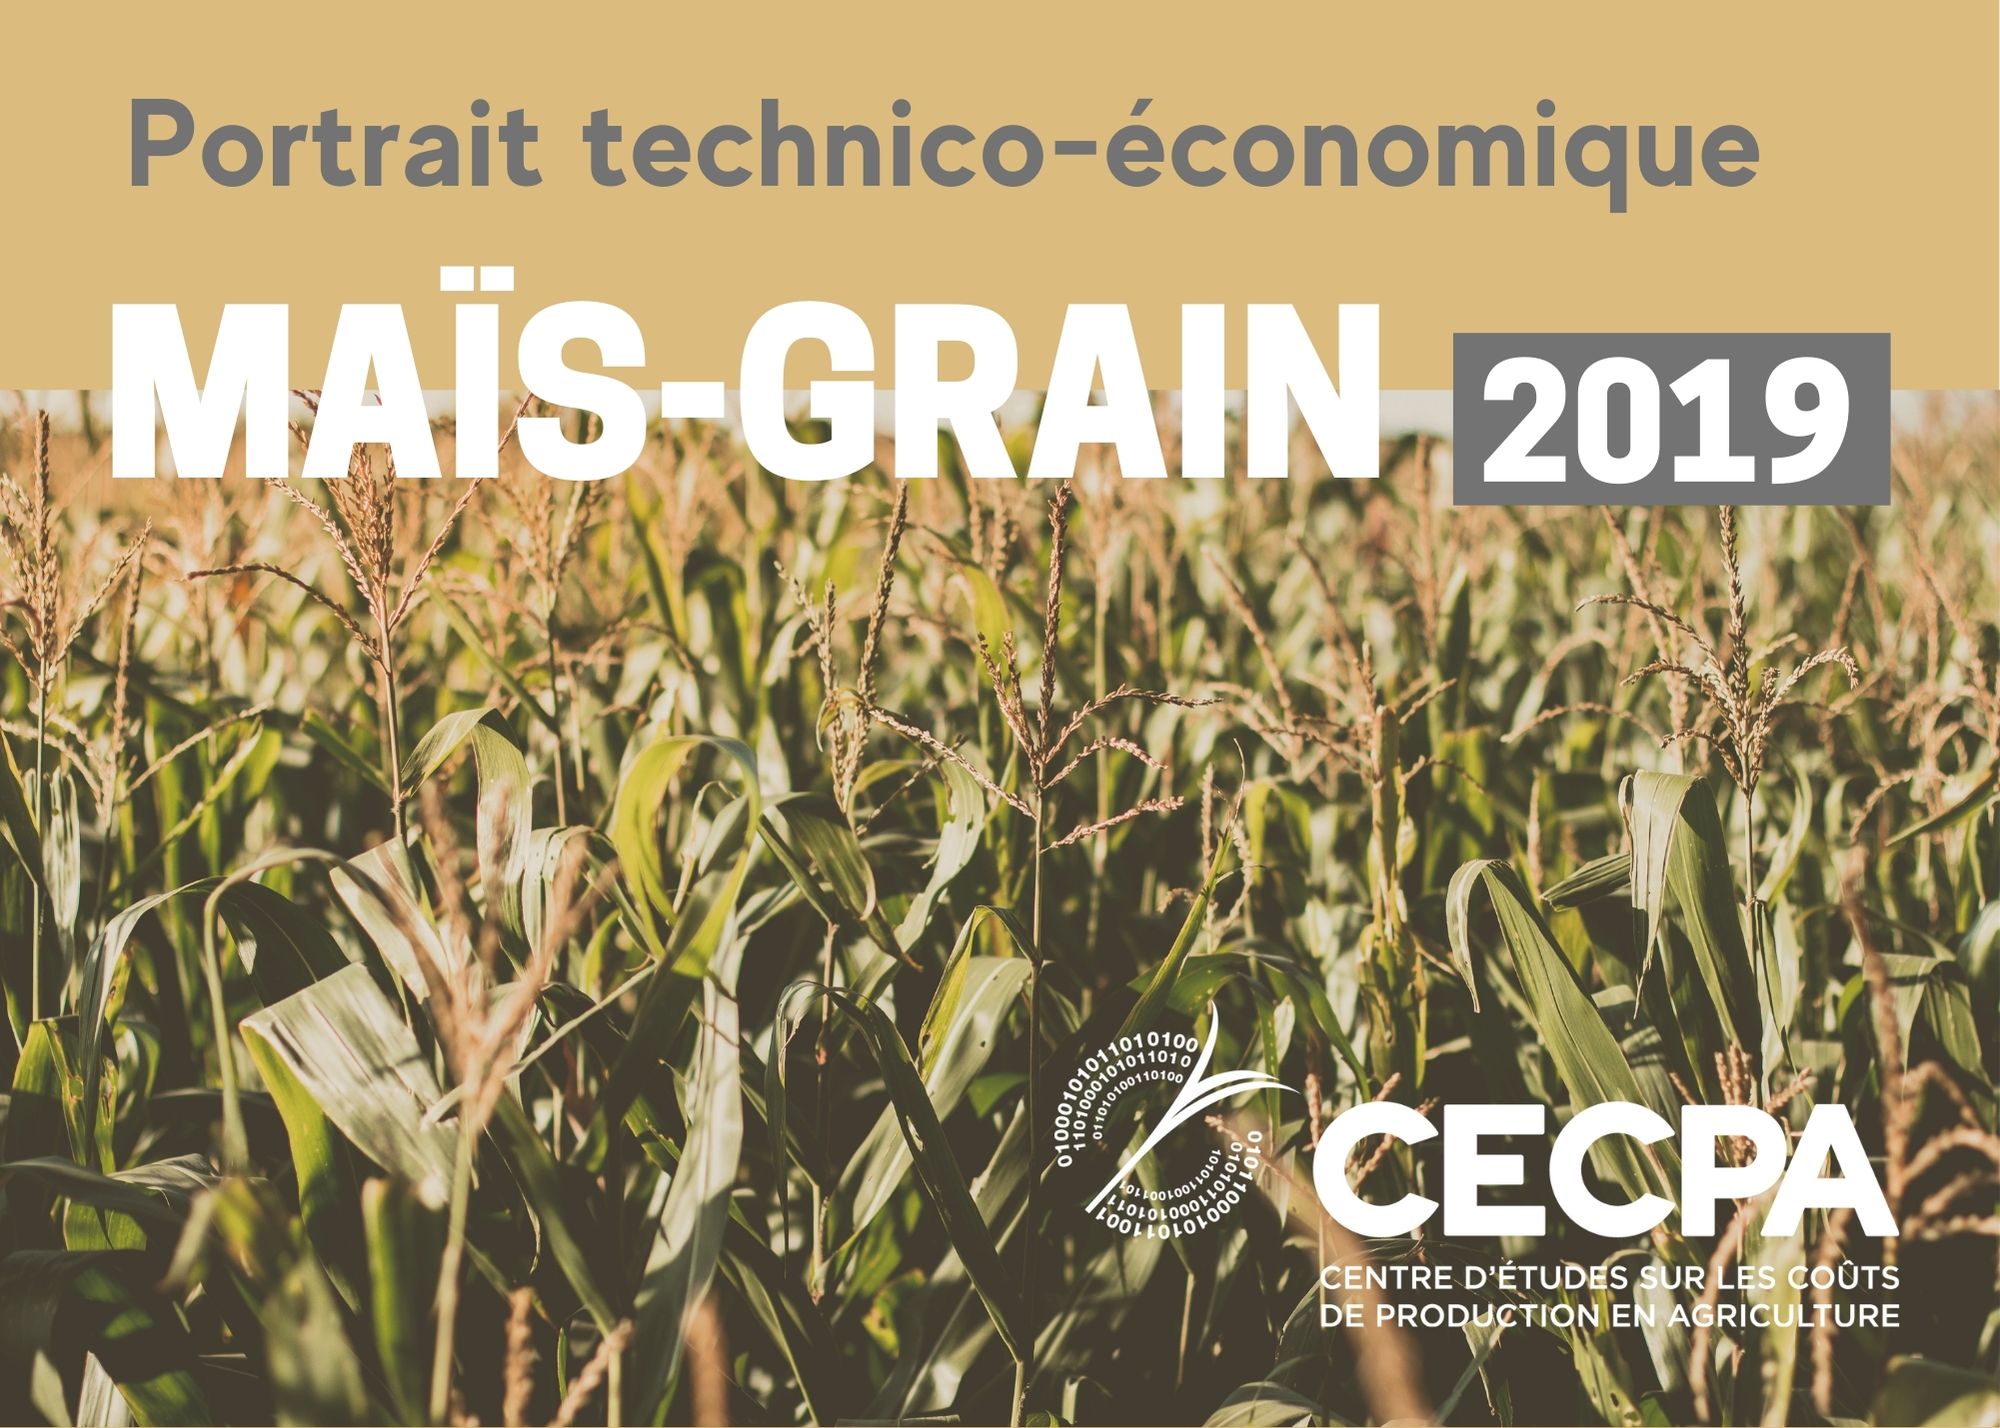 étude : Portrait technico-économique - Maïs-grain 2019